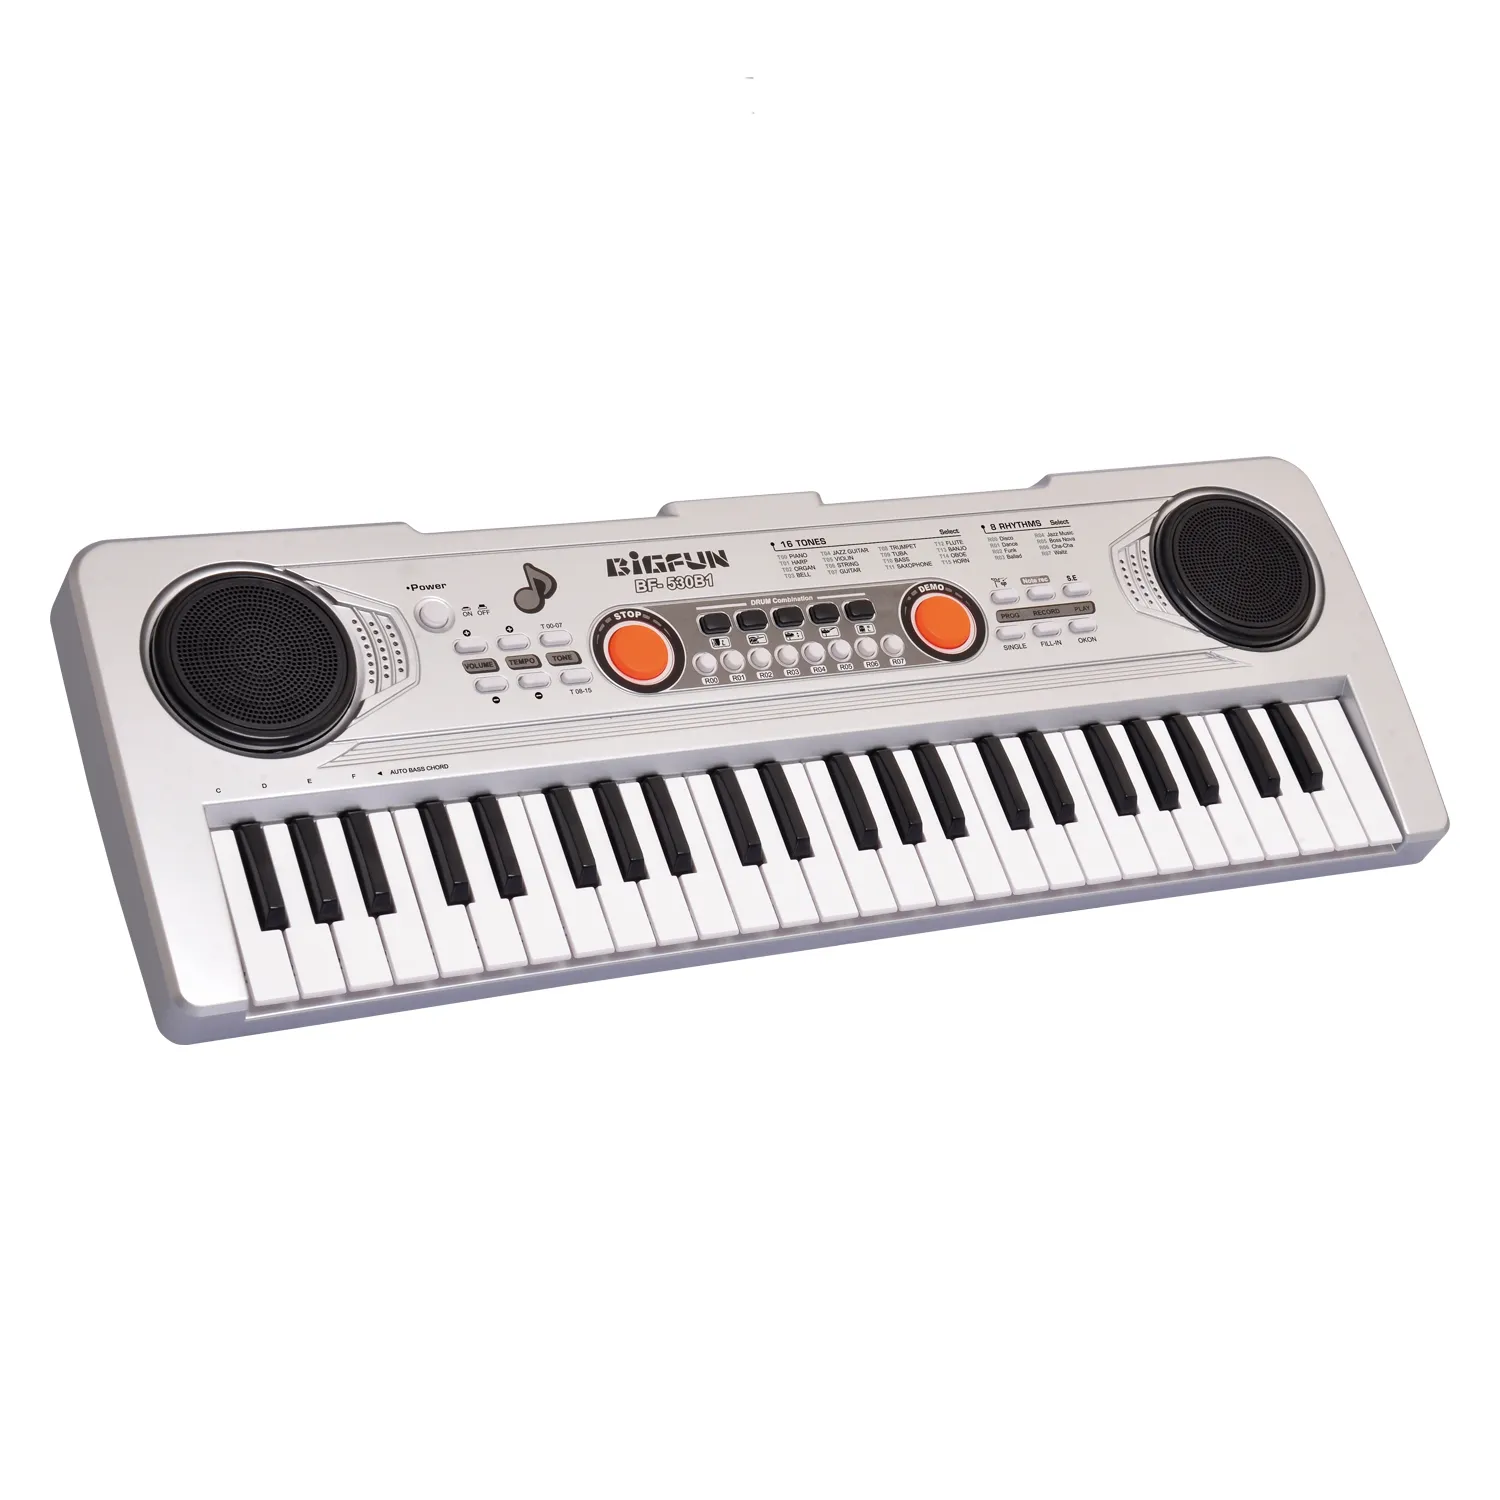 BF-530B1 Neue Hochwertige Spielzeug 49 Tasten elektronische Orgel tragbare digitale Tastatur Musikspiel zeug Klavier für Kinder